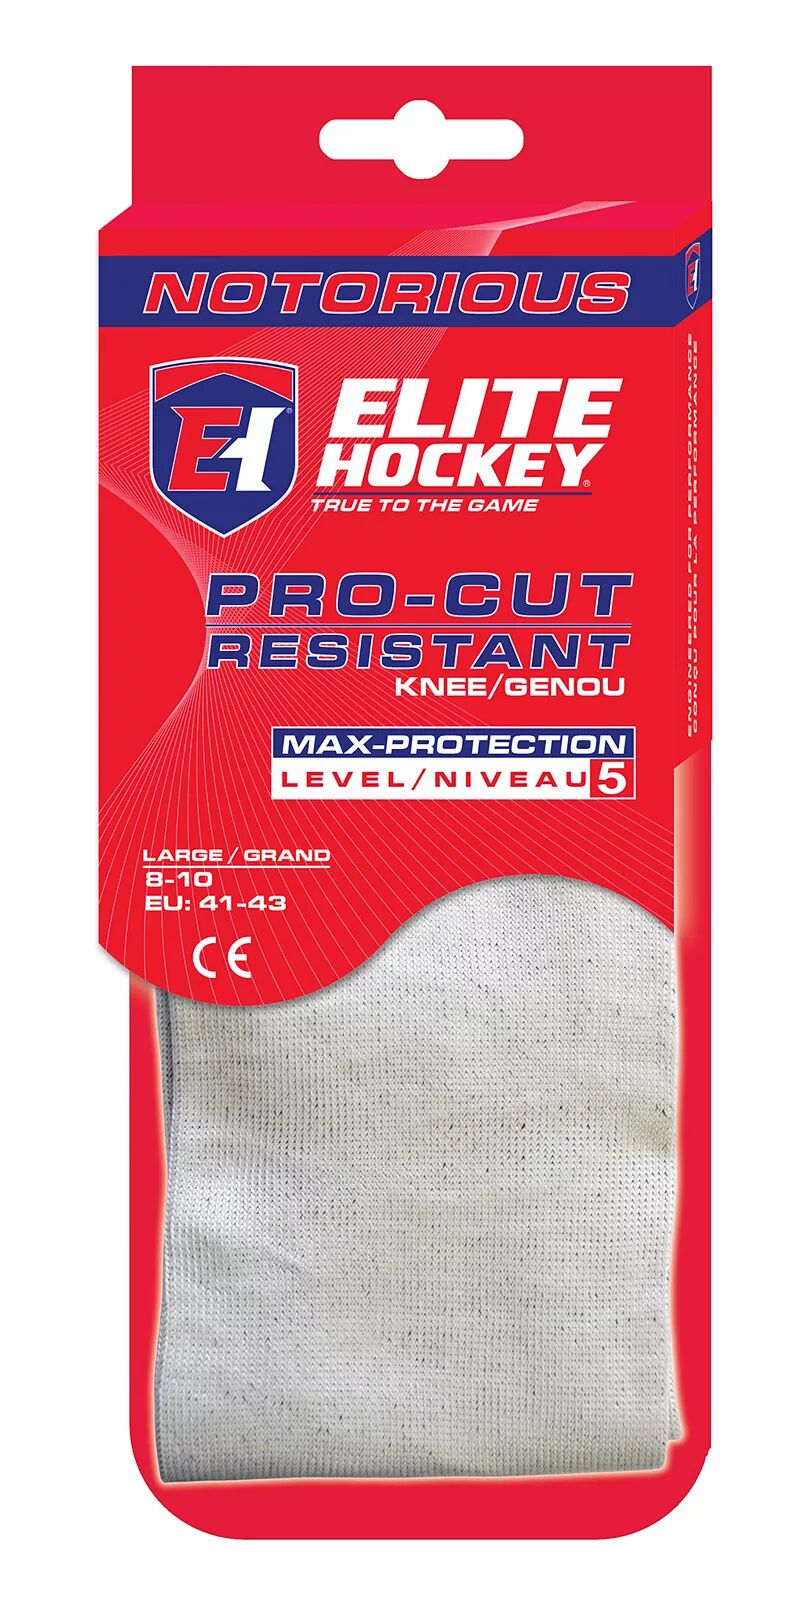 Гольфы Elite Hockey Notorious Pro-Cut, устойчивые к порезам Icon Sports Group, серебристый/черный